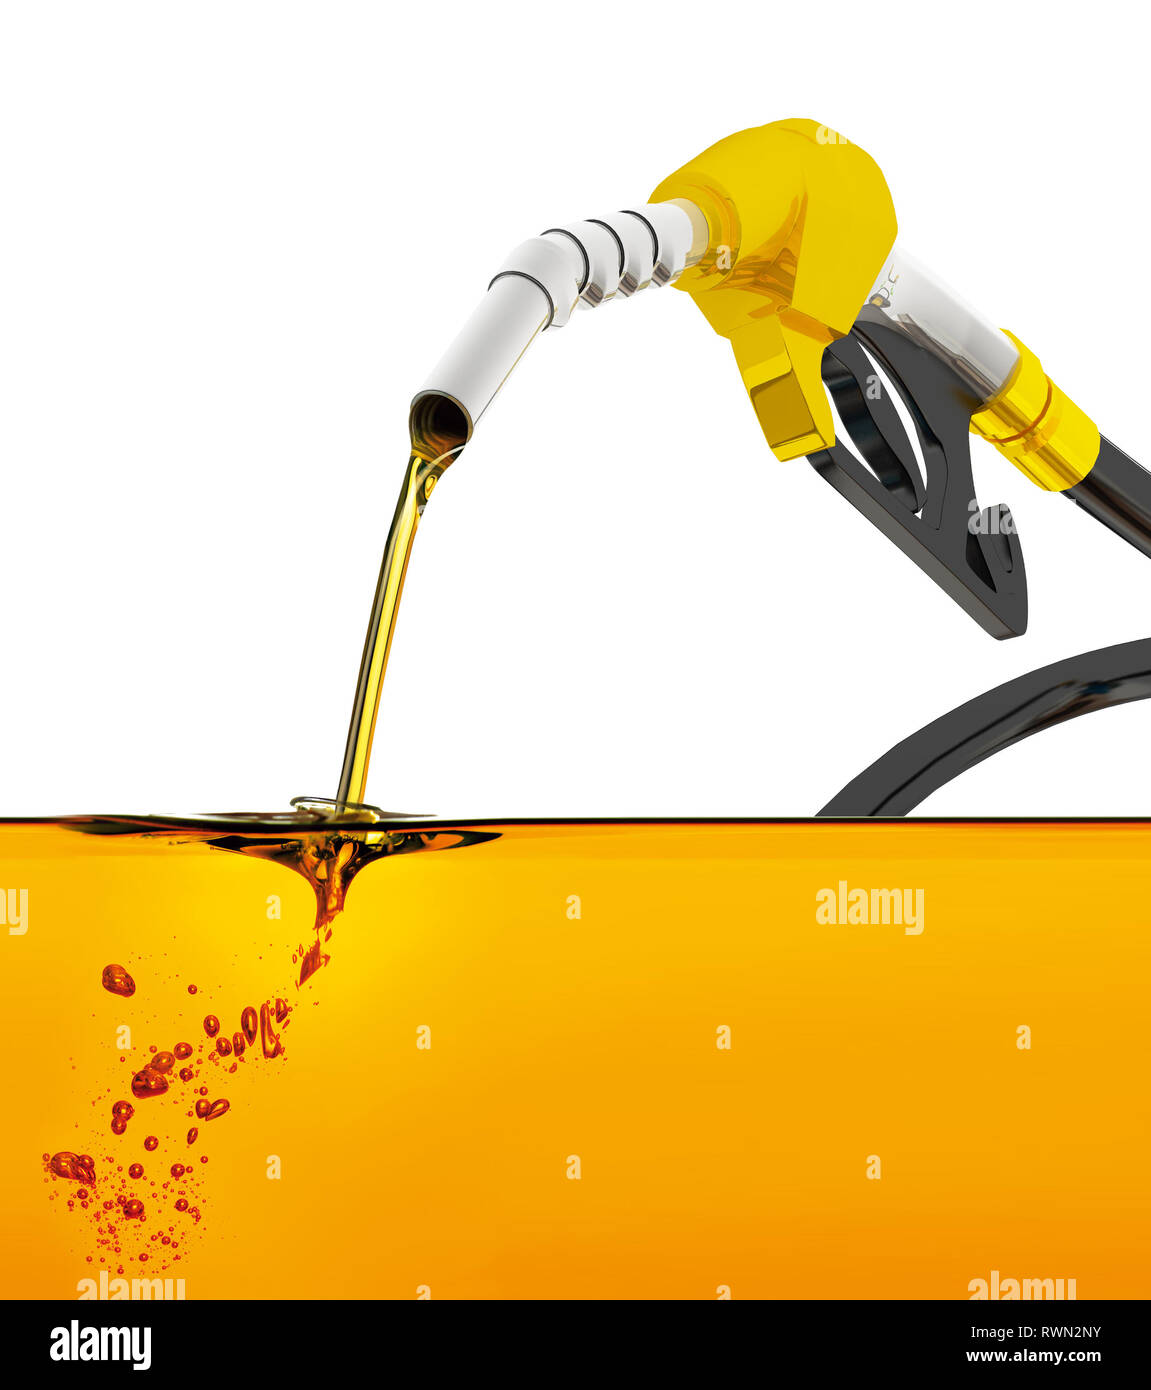 Düse Benzin pumpen in einem Tank, der Zapfpistole gießt Benzin über weißen  Hintergrund, Düse pumpen eines Benzin Flüssigkeit in einen Tank mit Öl  Indus Stockfotografie - Alamy